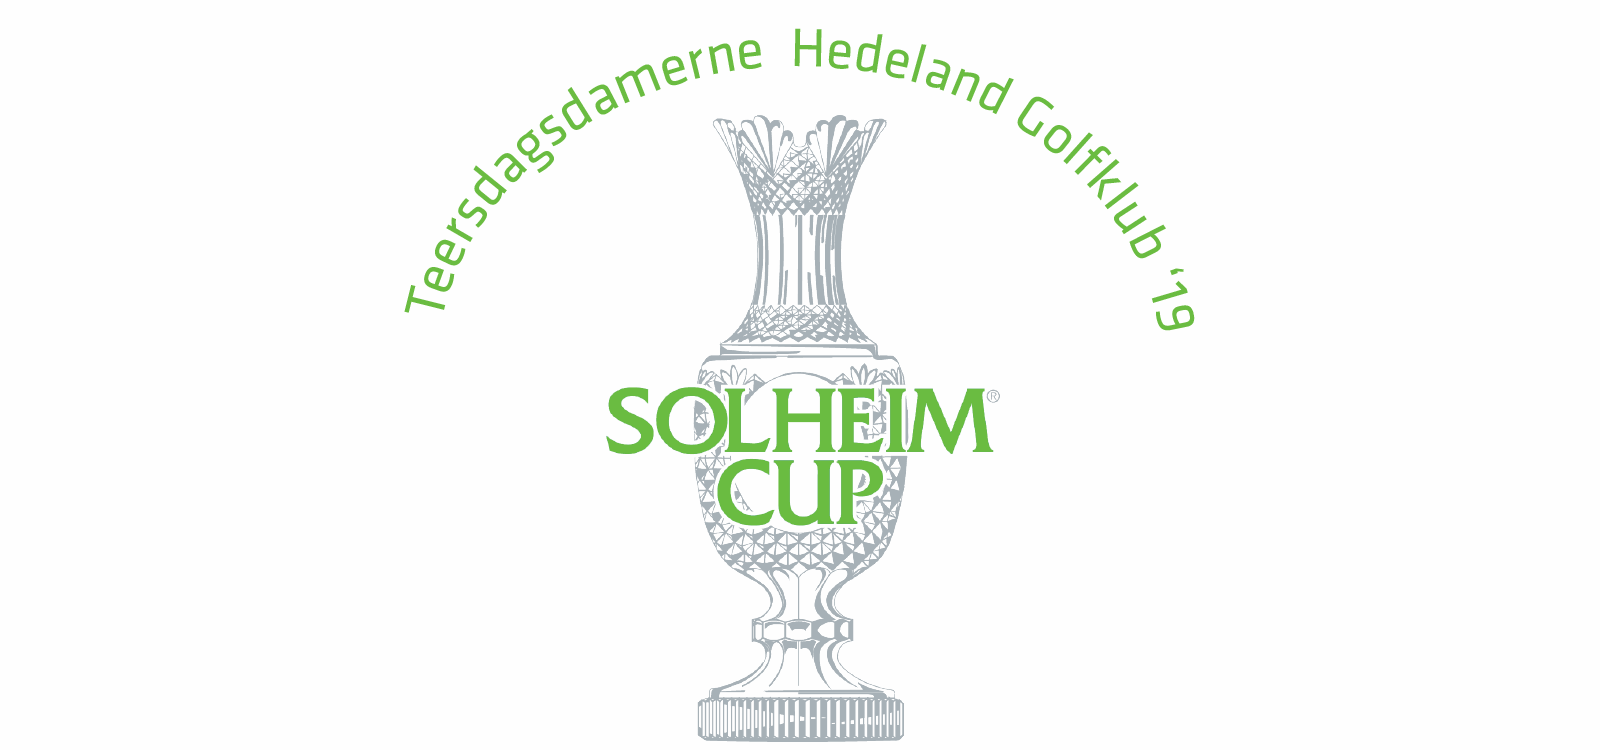 SolheimCup Hedeland 19.png